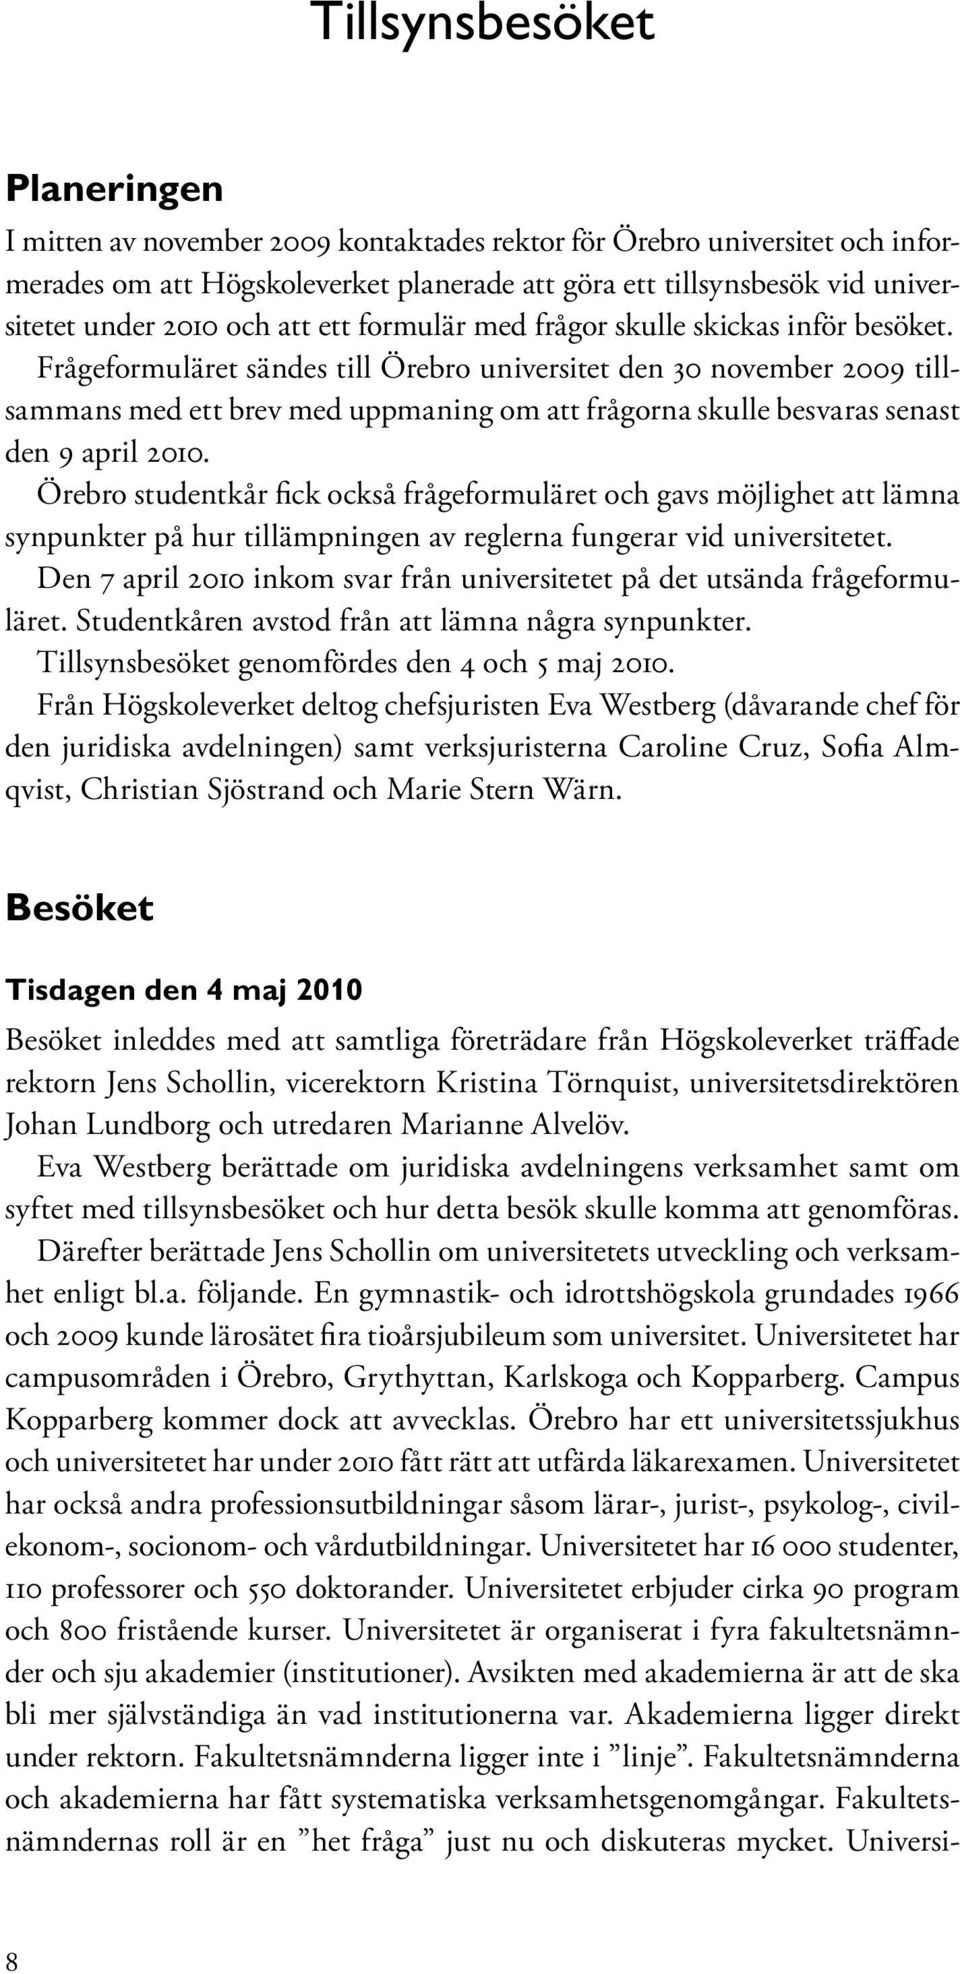 Frågeformuläret sändes till Örebro universitet den 30 november 2009 tillsammans med ett brev med uppmaning om att frågorna skulle besvaras senast den 9 april 2010.